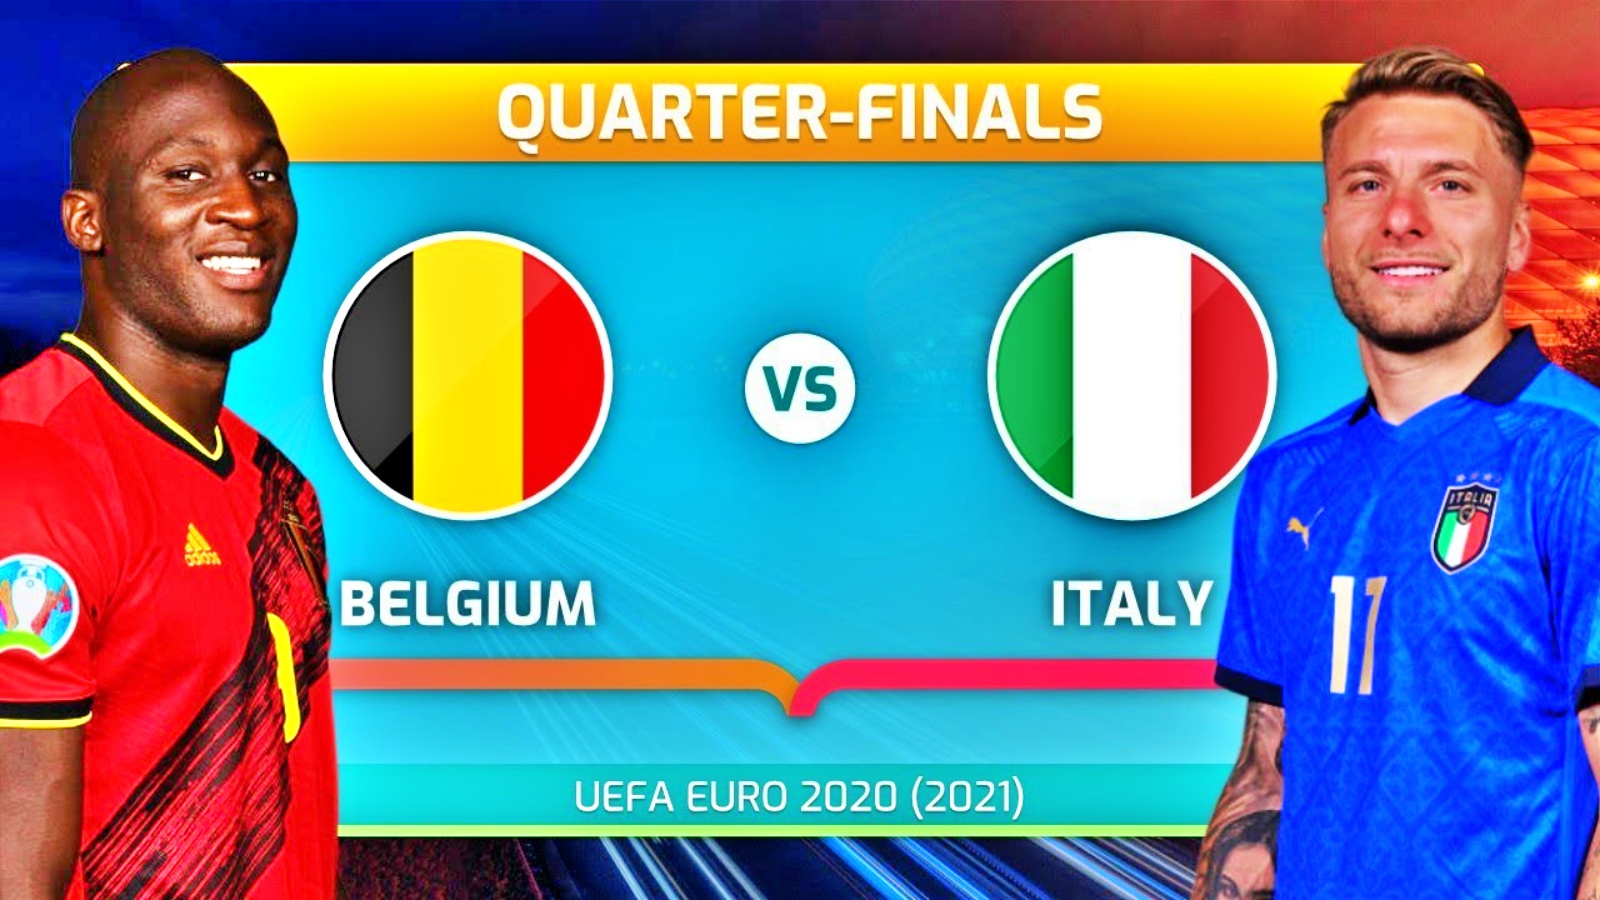 BELGIË - ITALIË PRO TV LIVE EURO 2020